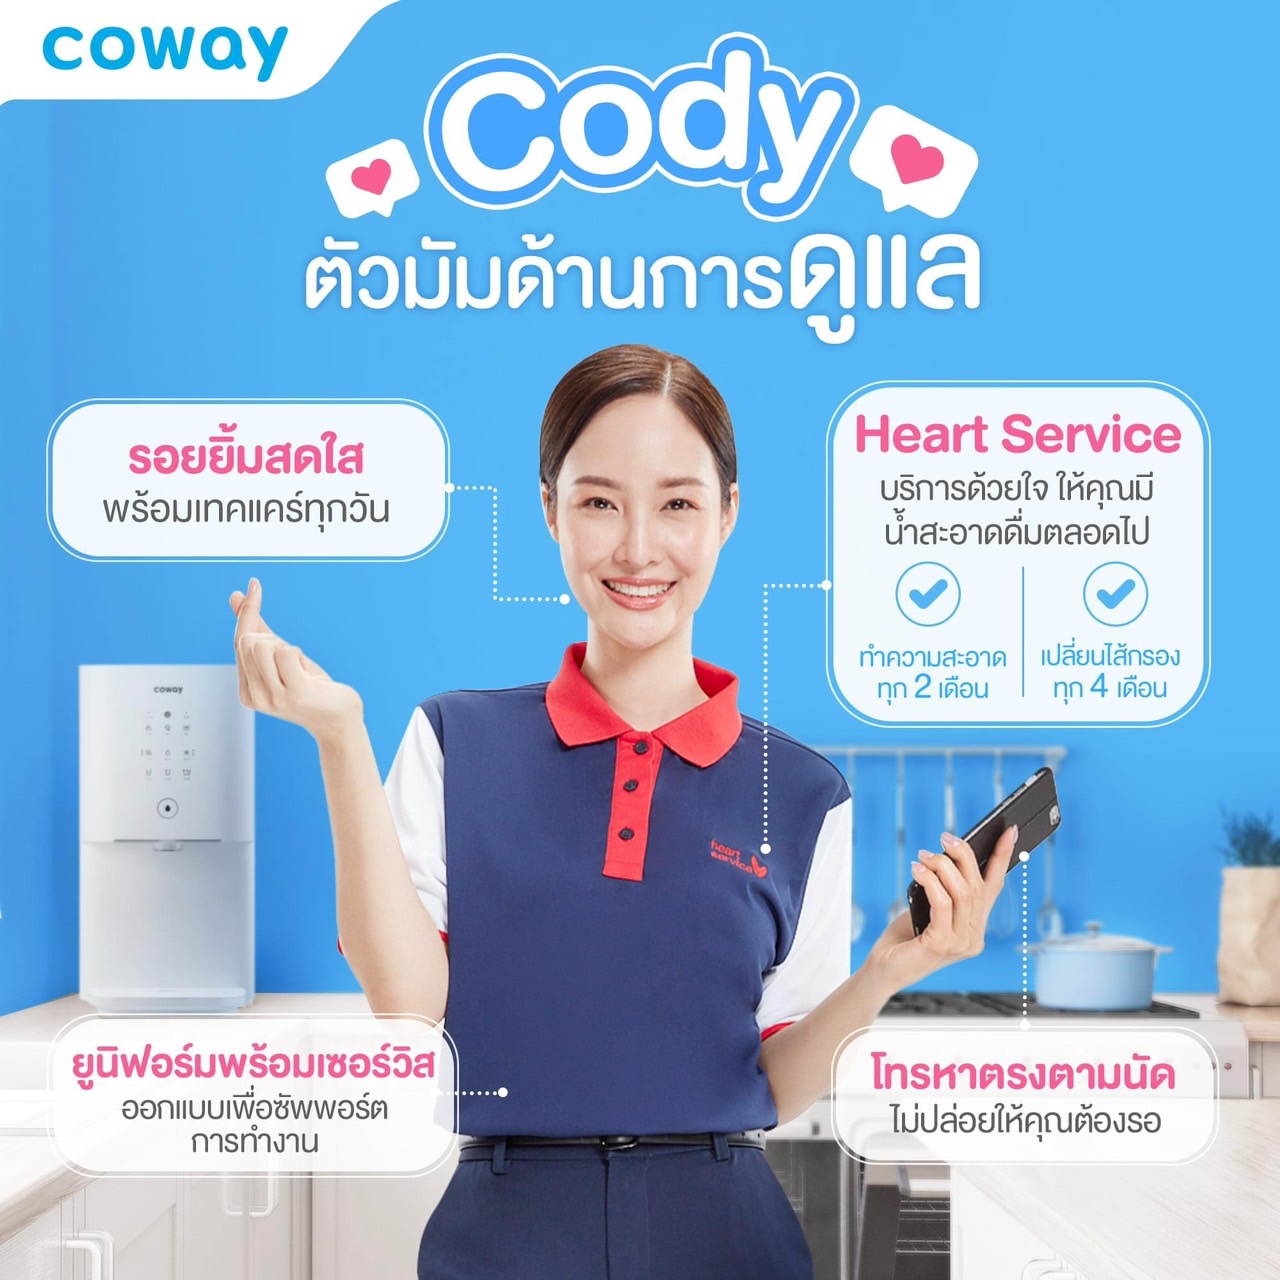 เครื่องกรองน้ำ Coway เป็นเจ้าแรกในไทย ที่มีการชำระแบบรายเดือน